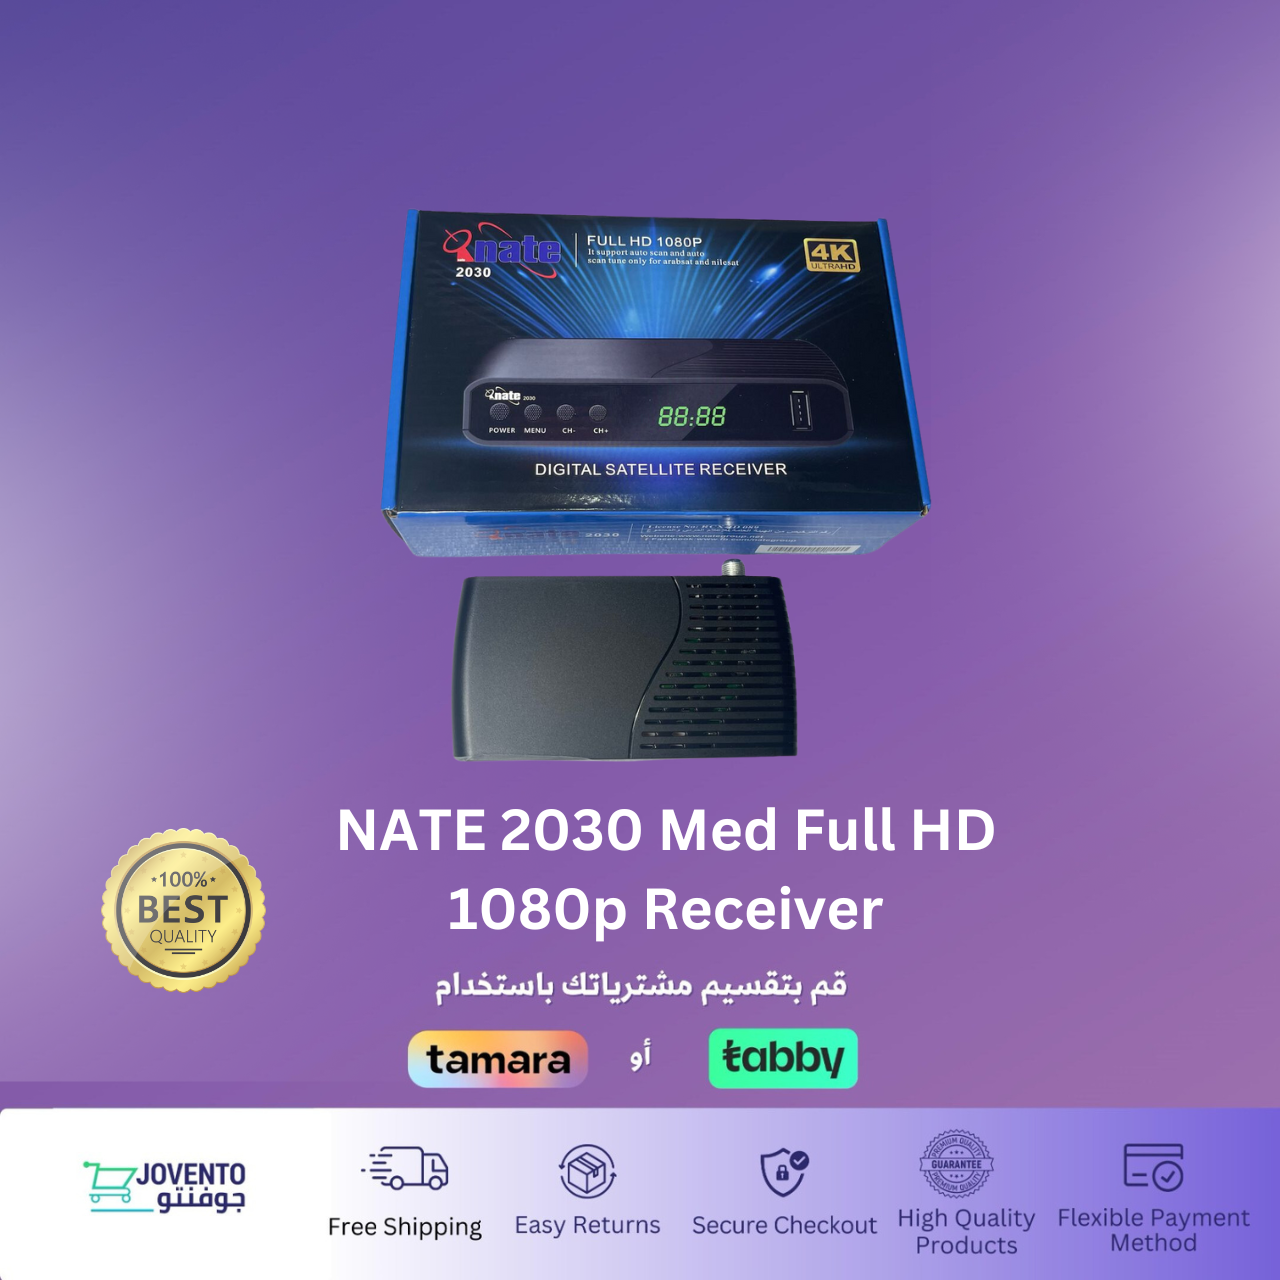 NATE 2030 Med Full HD 1080p Receiver